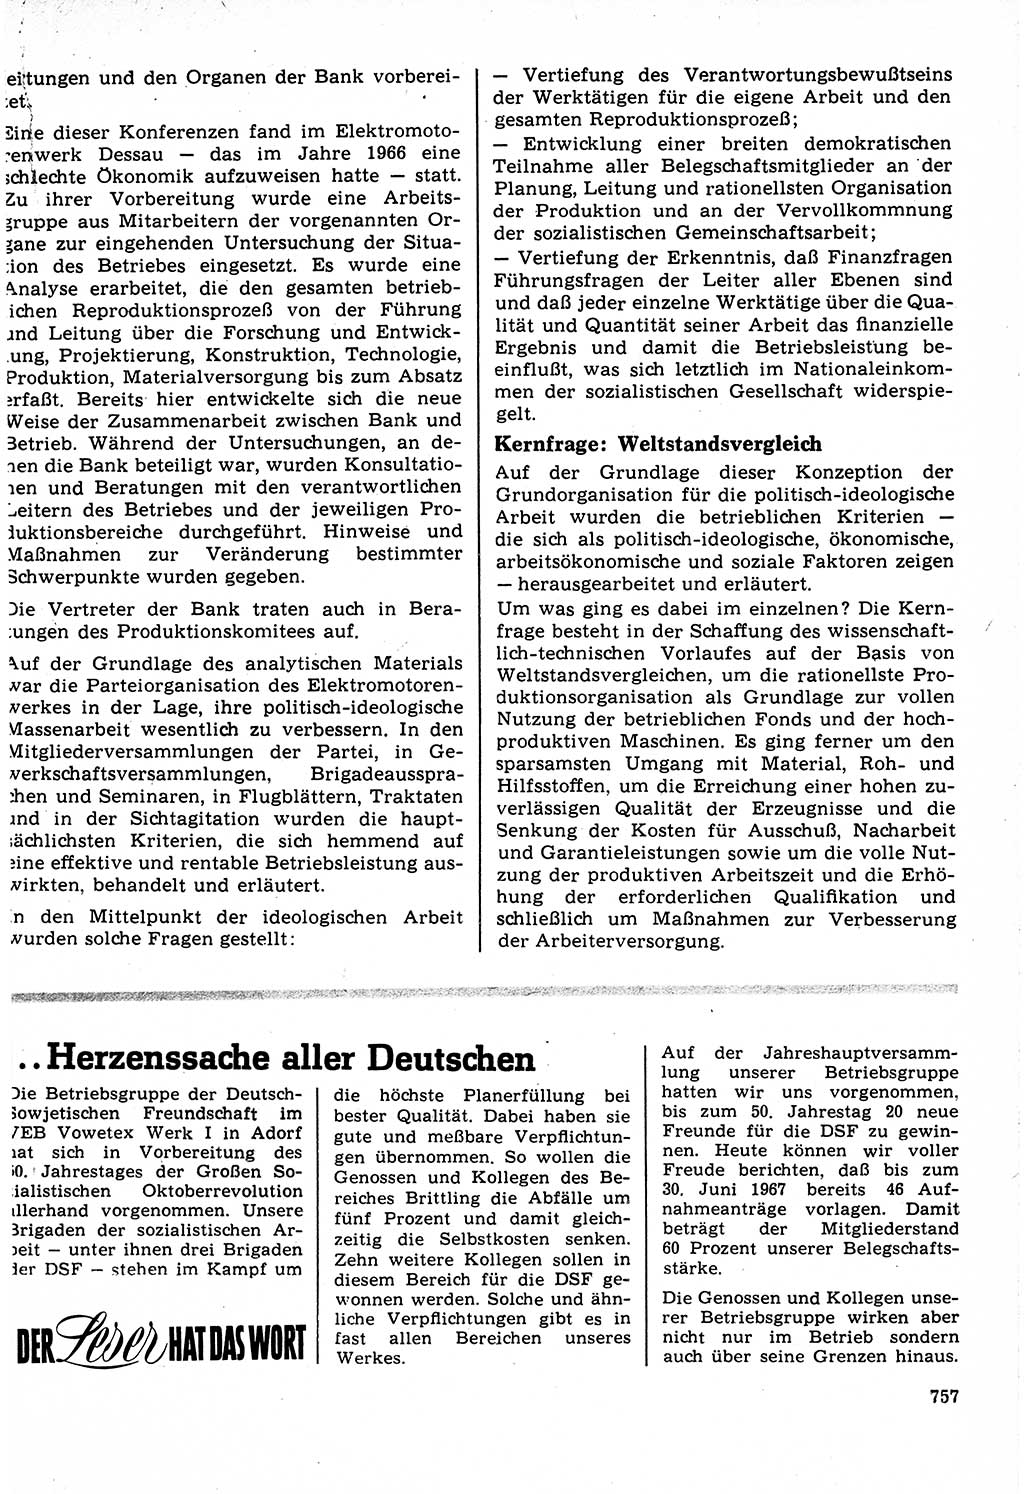 Neuer Weg (NW), Organ des Zentralkomitees (ZK) der SED (Sozialistische Einheitspartei Deutschlands) für Fragen des Parteilebens, 22. Jahrgang [Deutsche Demokratische Republik (DDR)] 1967, Seite 757 (NW ZK SED DDR 1967, S. 757)